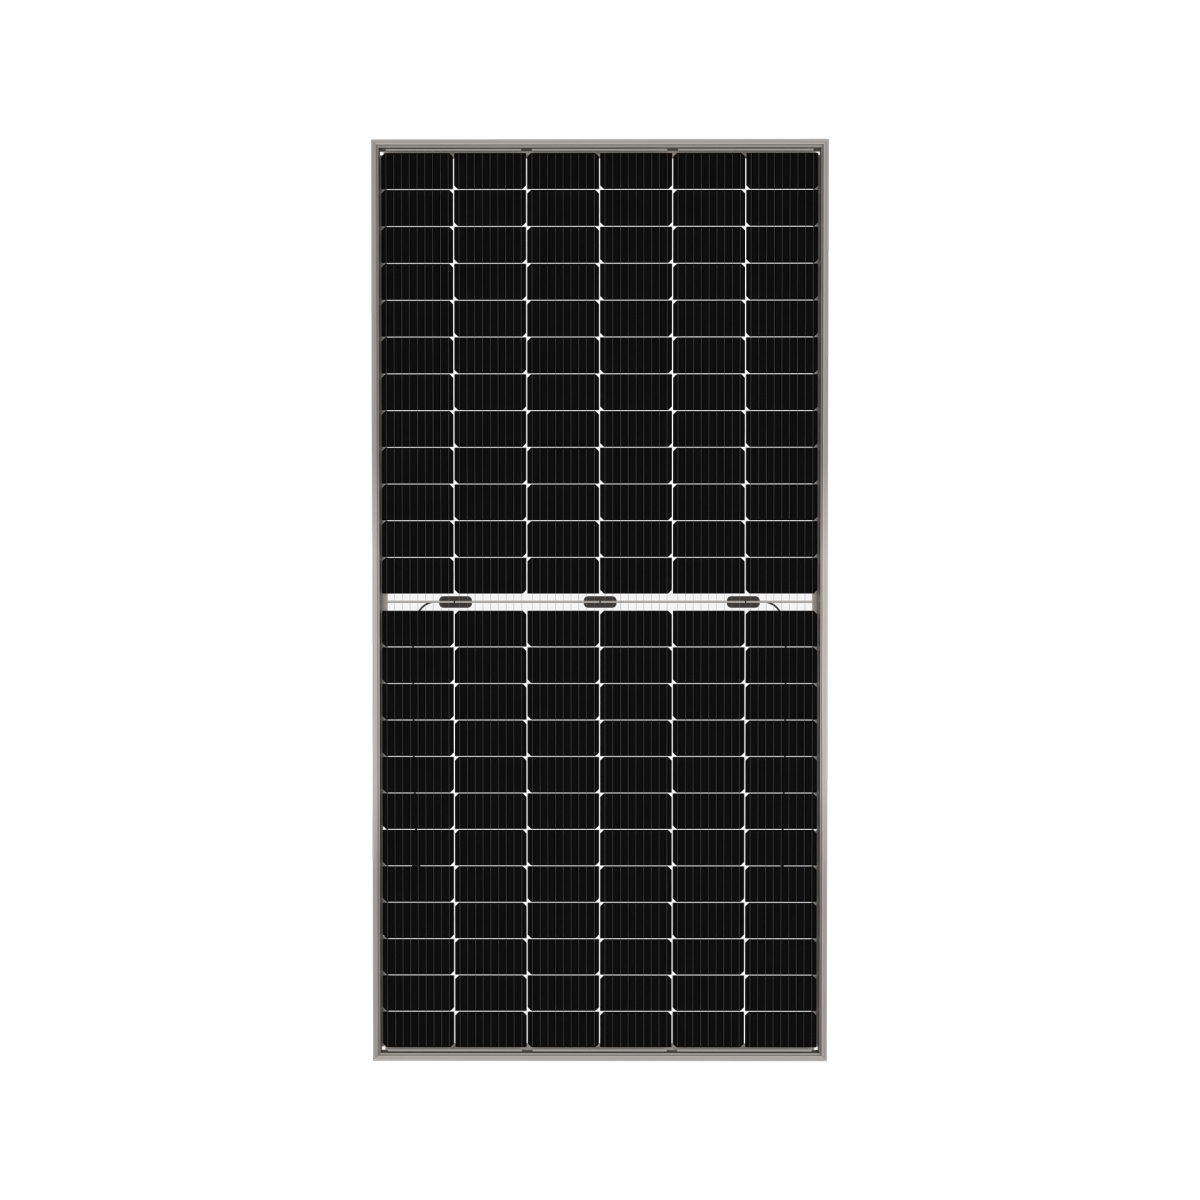 TommaTech 435Wp M6 144PM Cells Bifacial Half-Cut MB Solar Panel